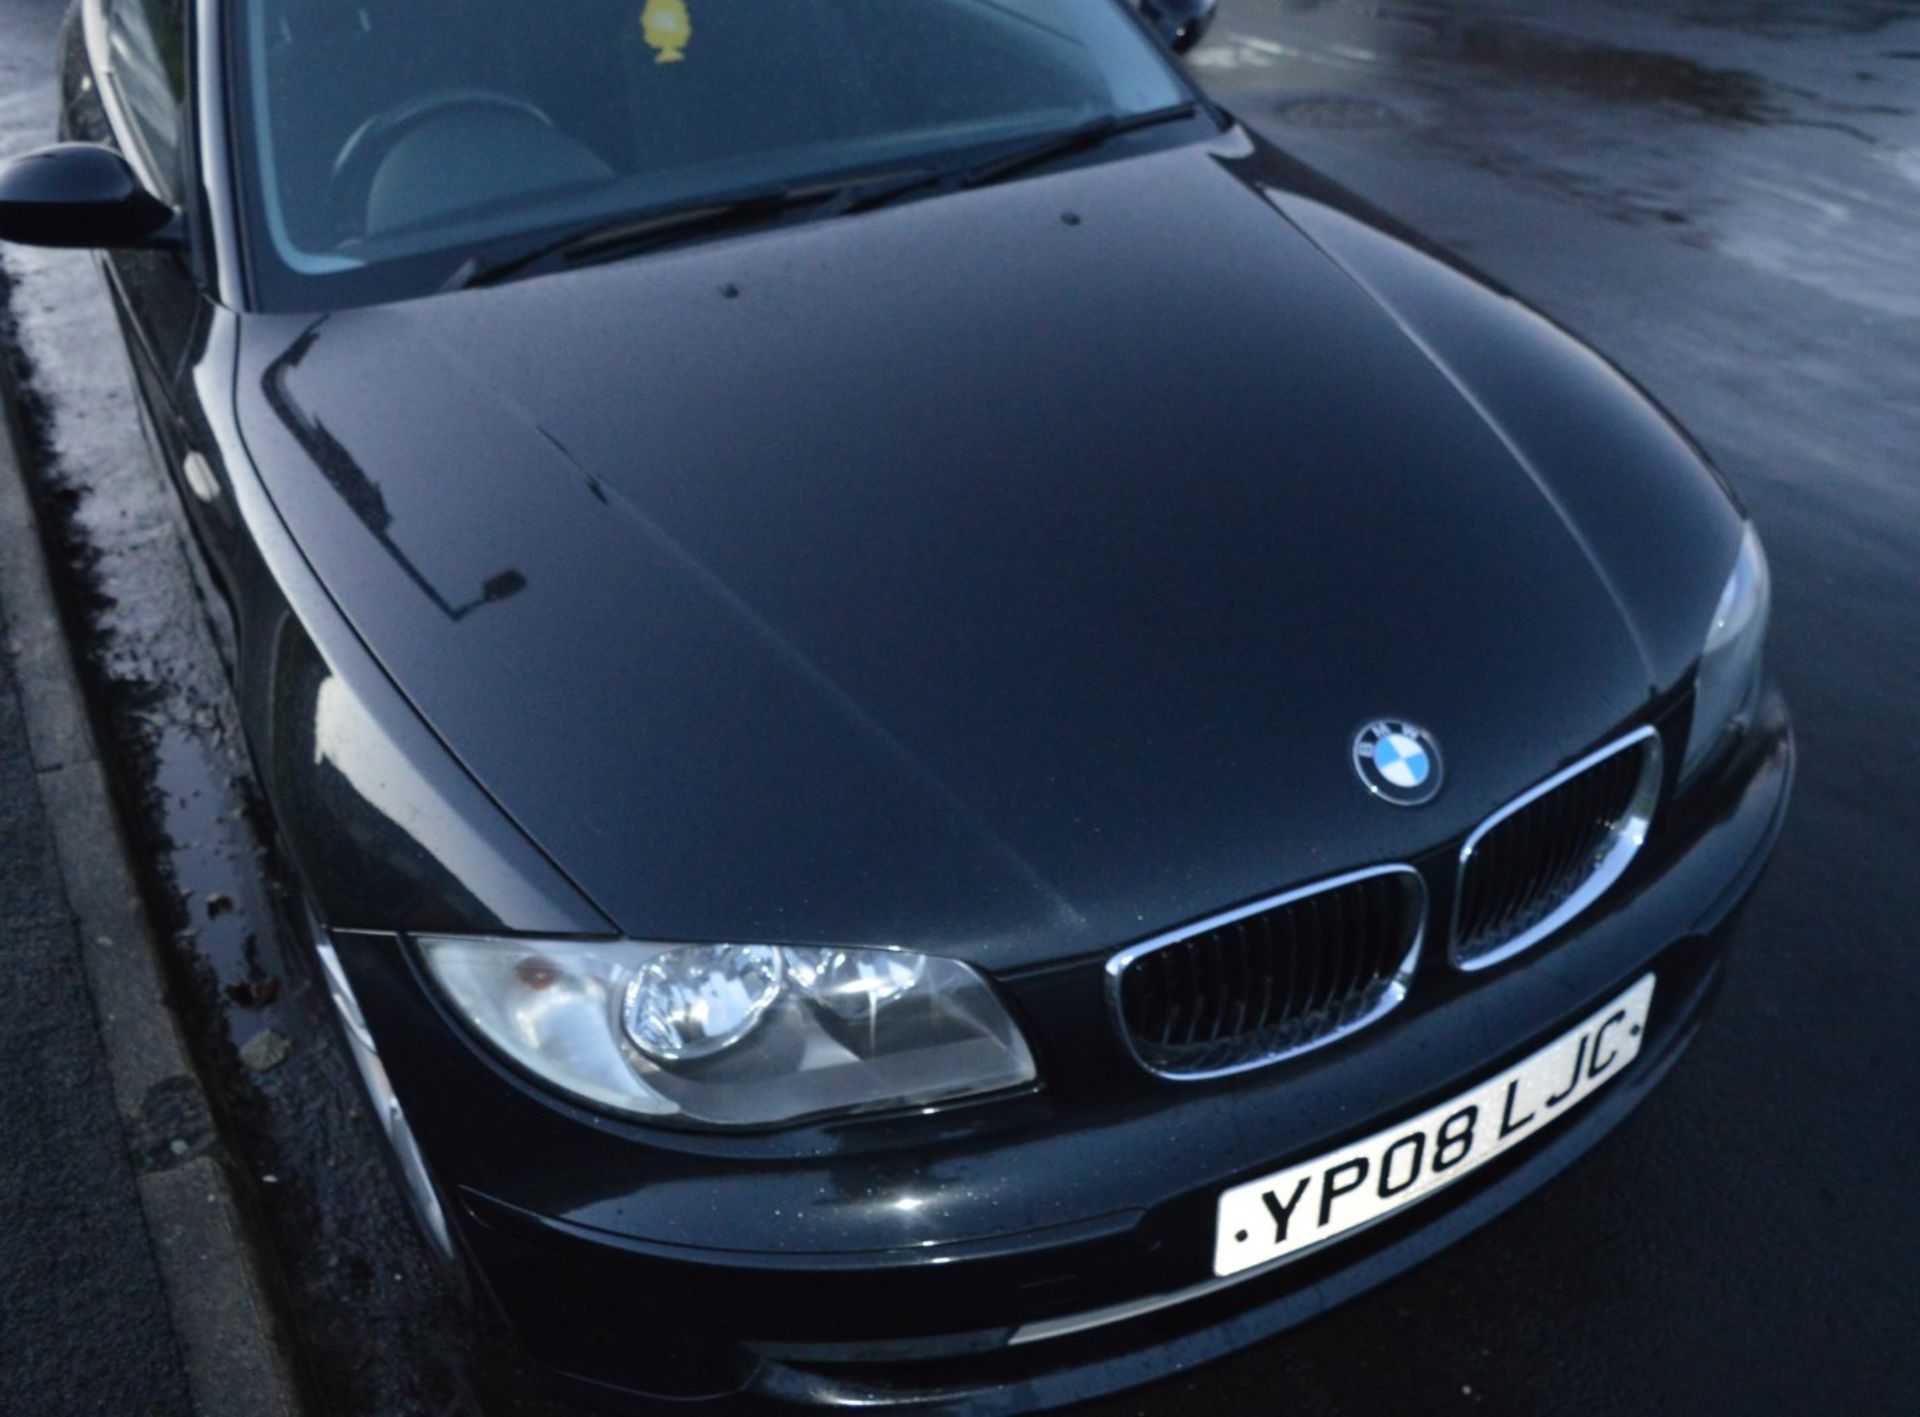 1 x 2008 BMW 1 Series 118d 3 Door Black 2l - £30 Per Year Road Tax - MOT Until January 2020 - - Image 21 of 31